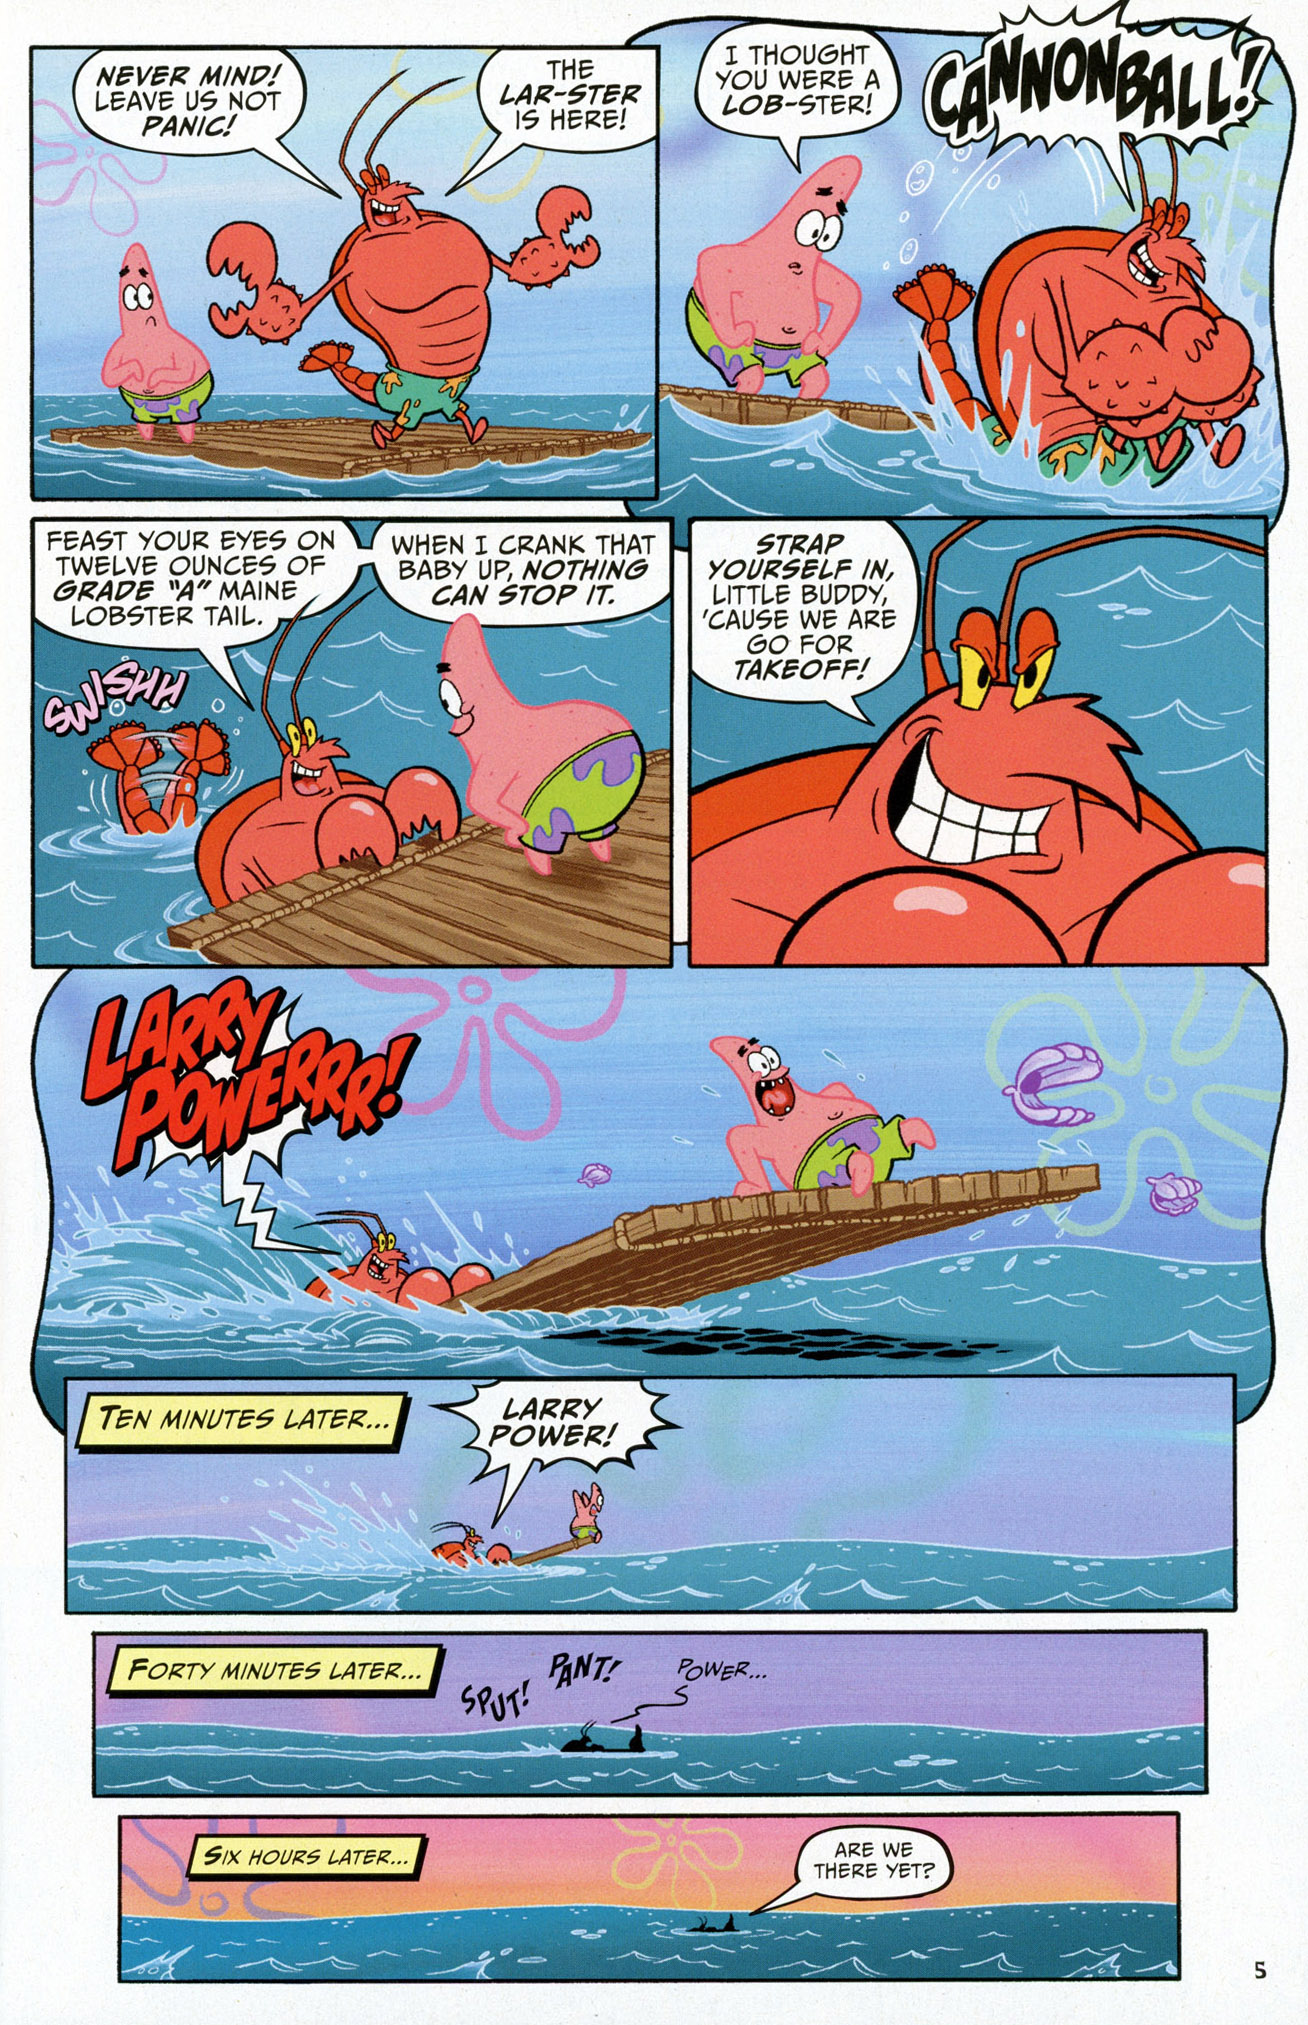 Spongebob Comics 58 Read Spongebob Comics Issue 58 Online Full Page